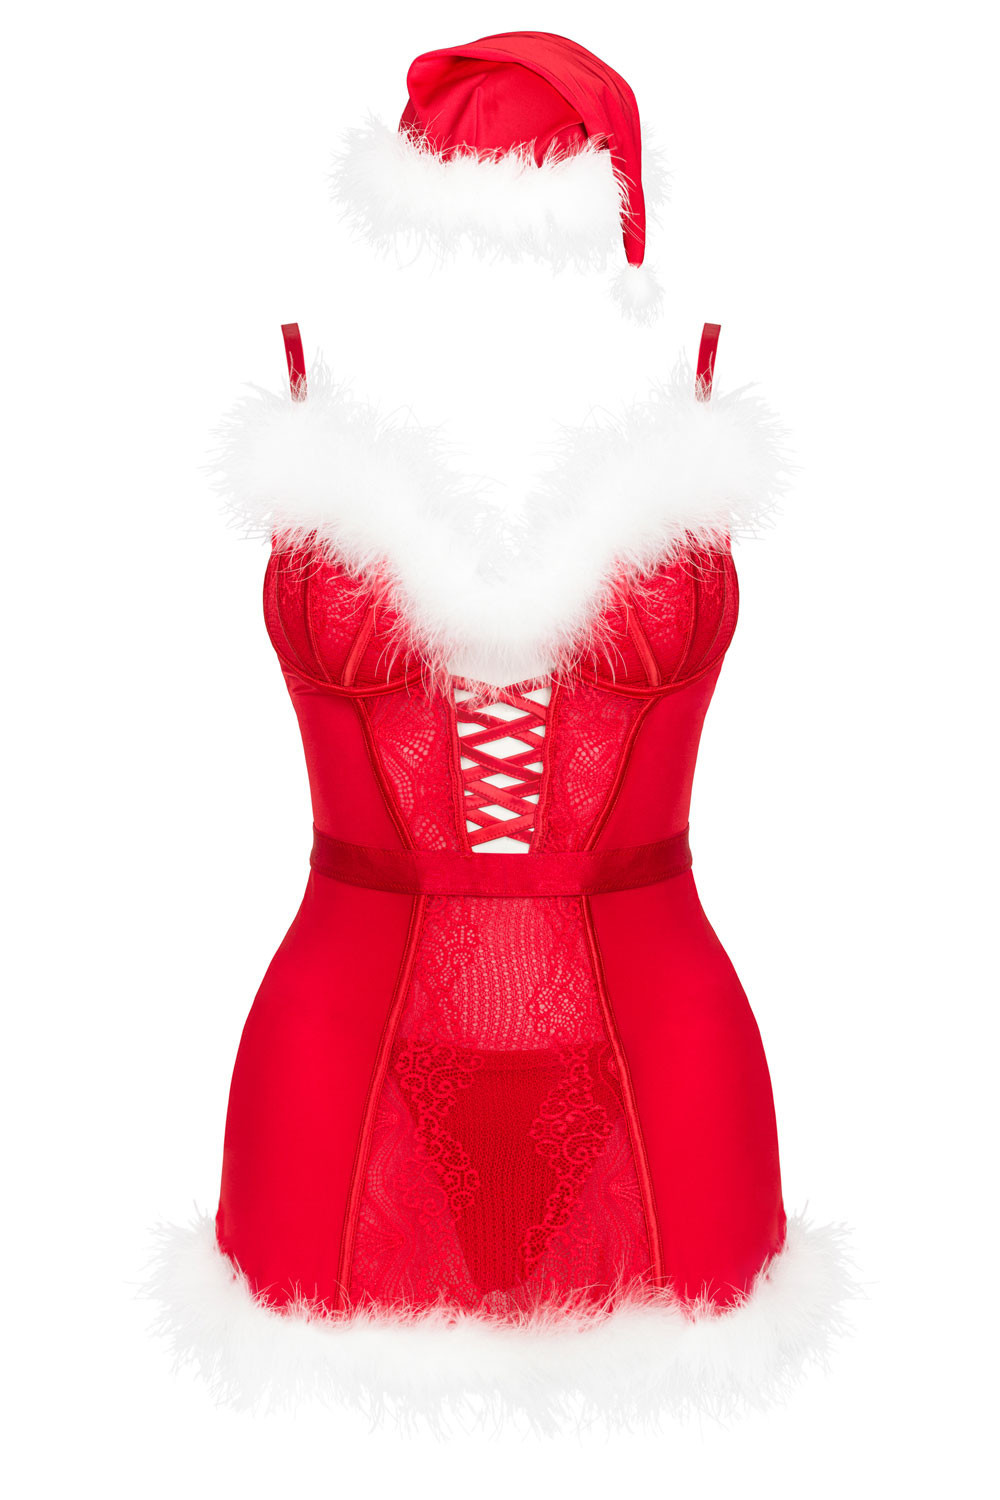 LivCo Corsetti Fashion Set Agethe Red L/XL